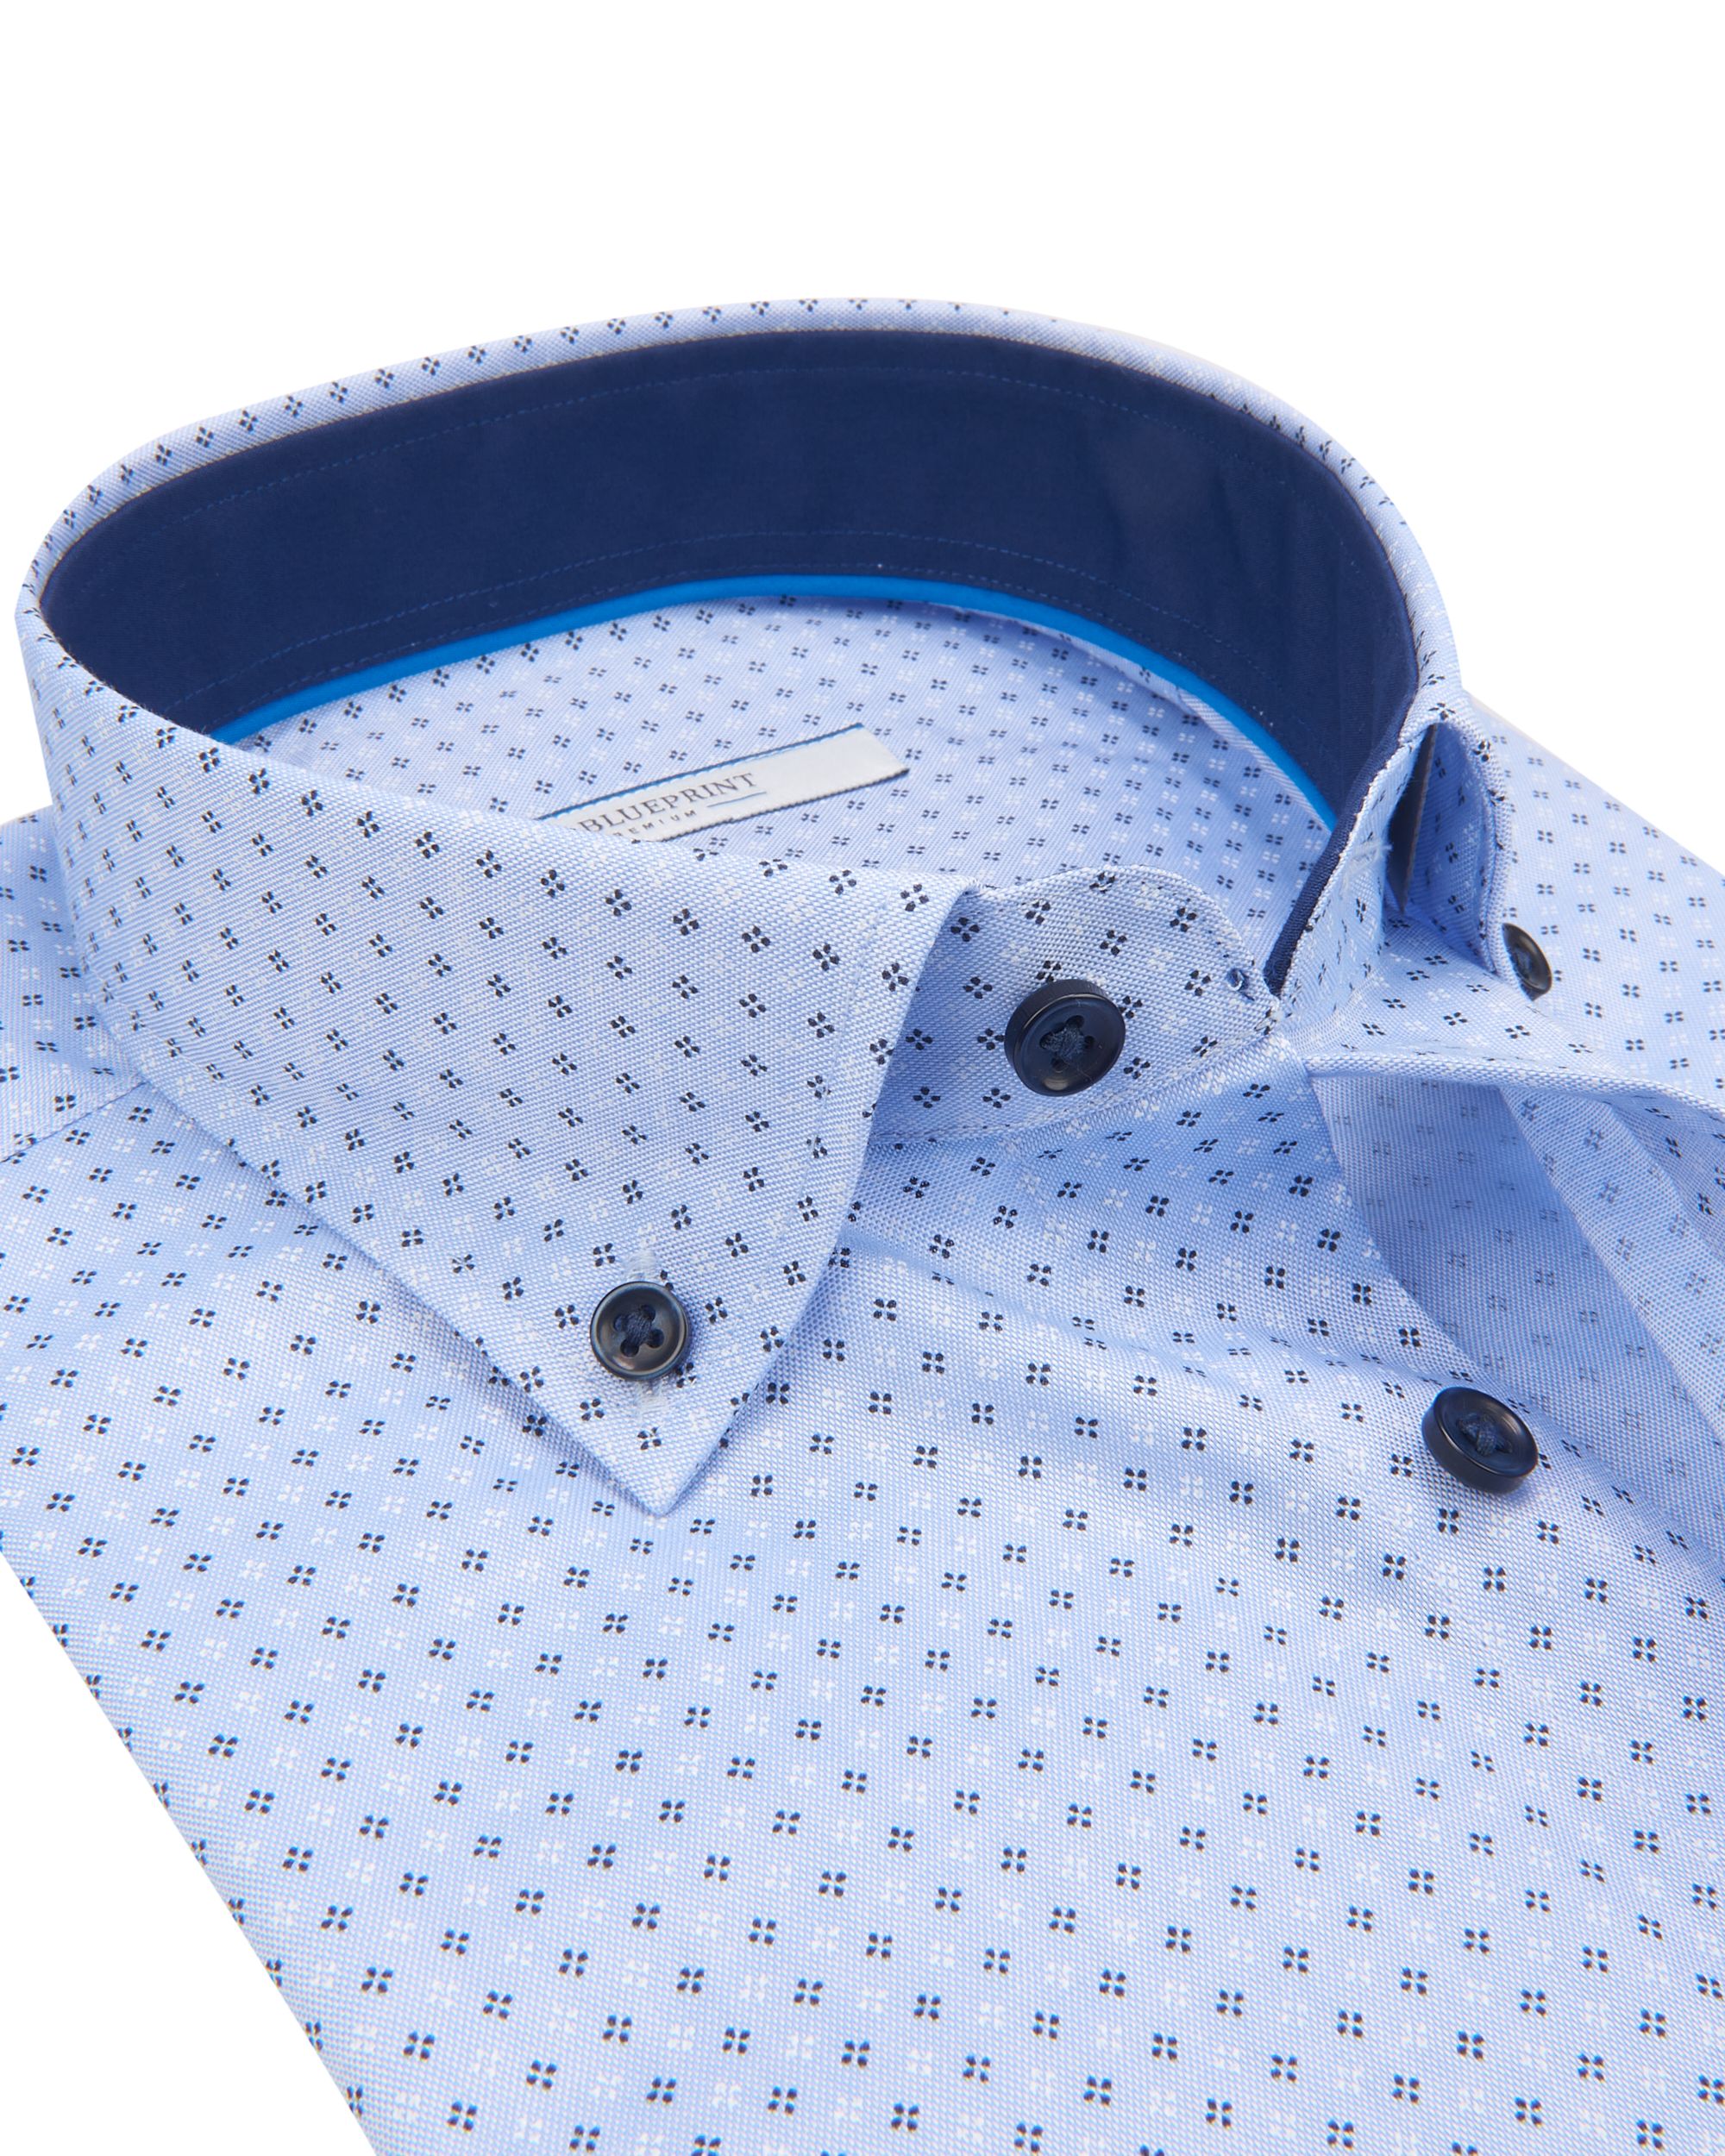 The BLUEPRINT Premium Trendy overhemd LM Lichtblauw dessin 078648-001-L